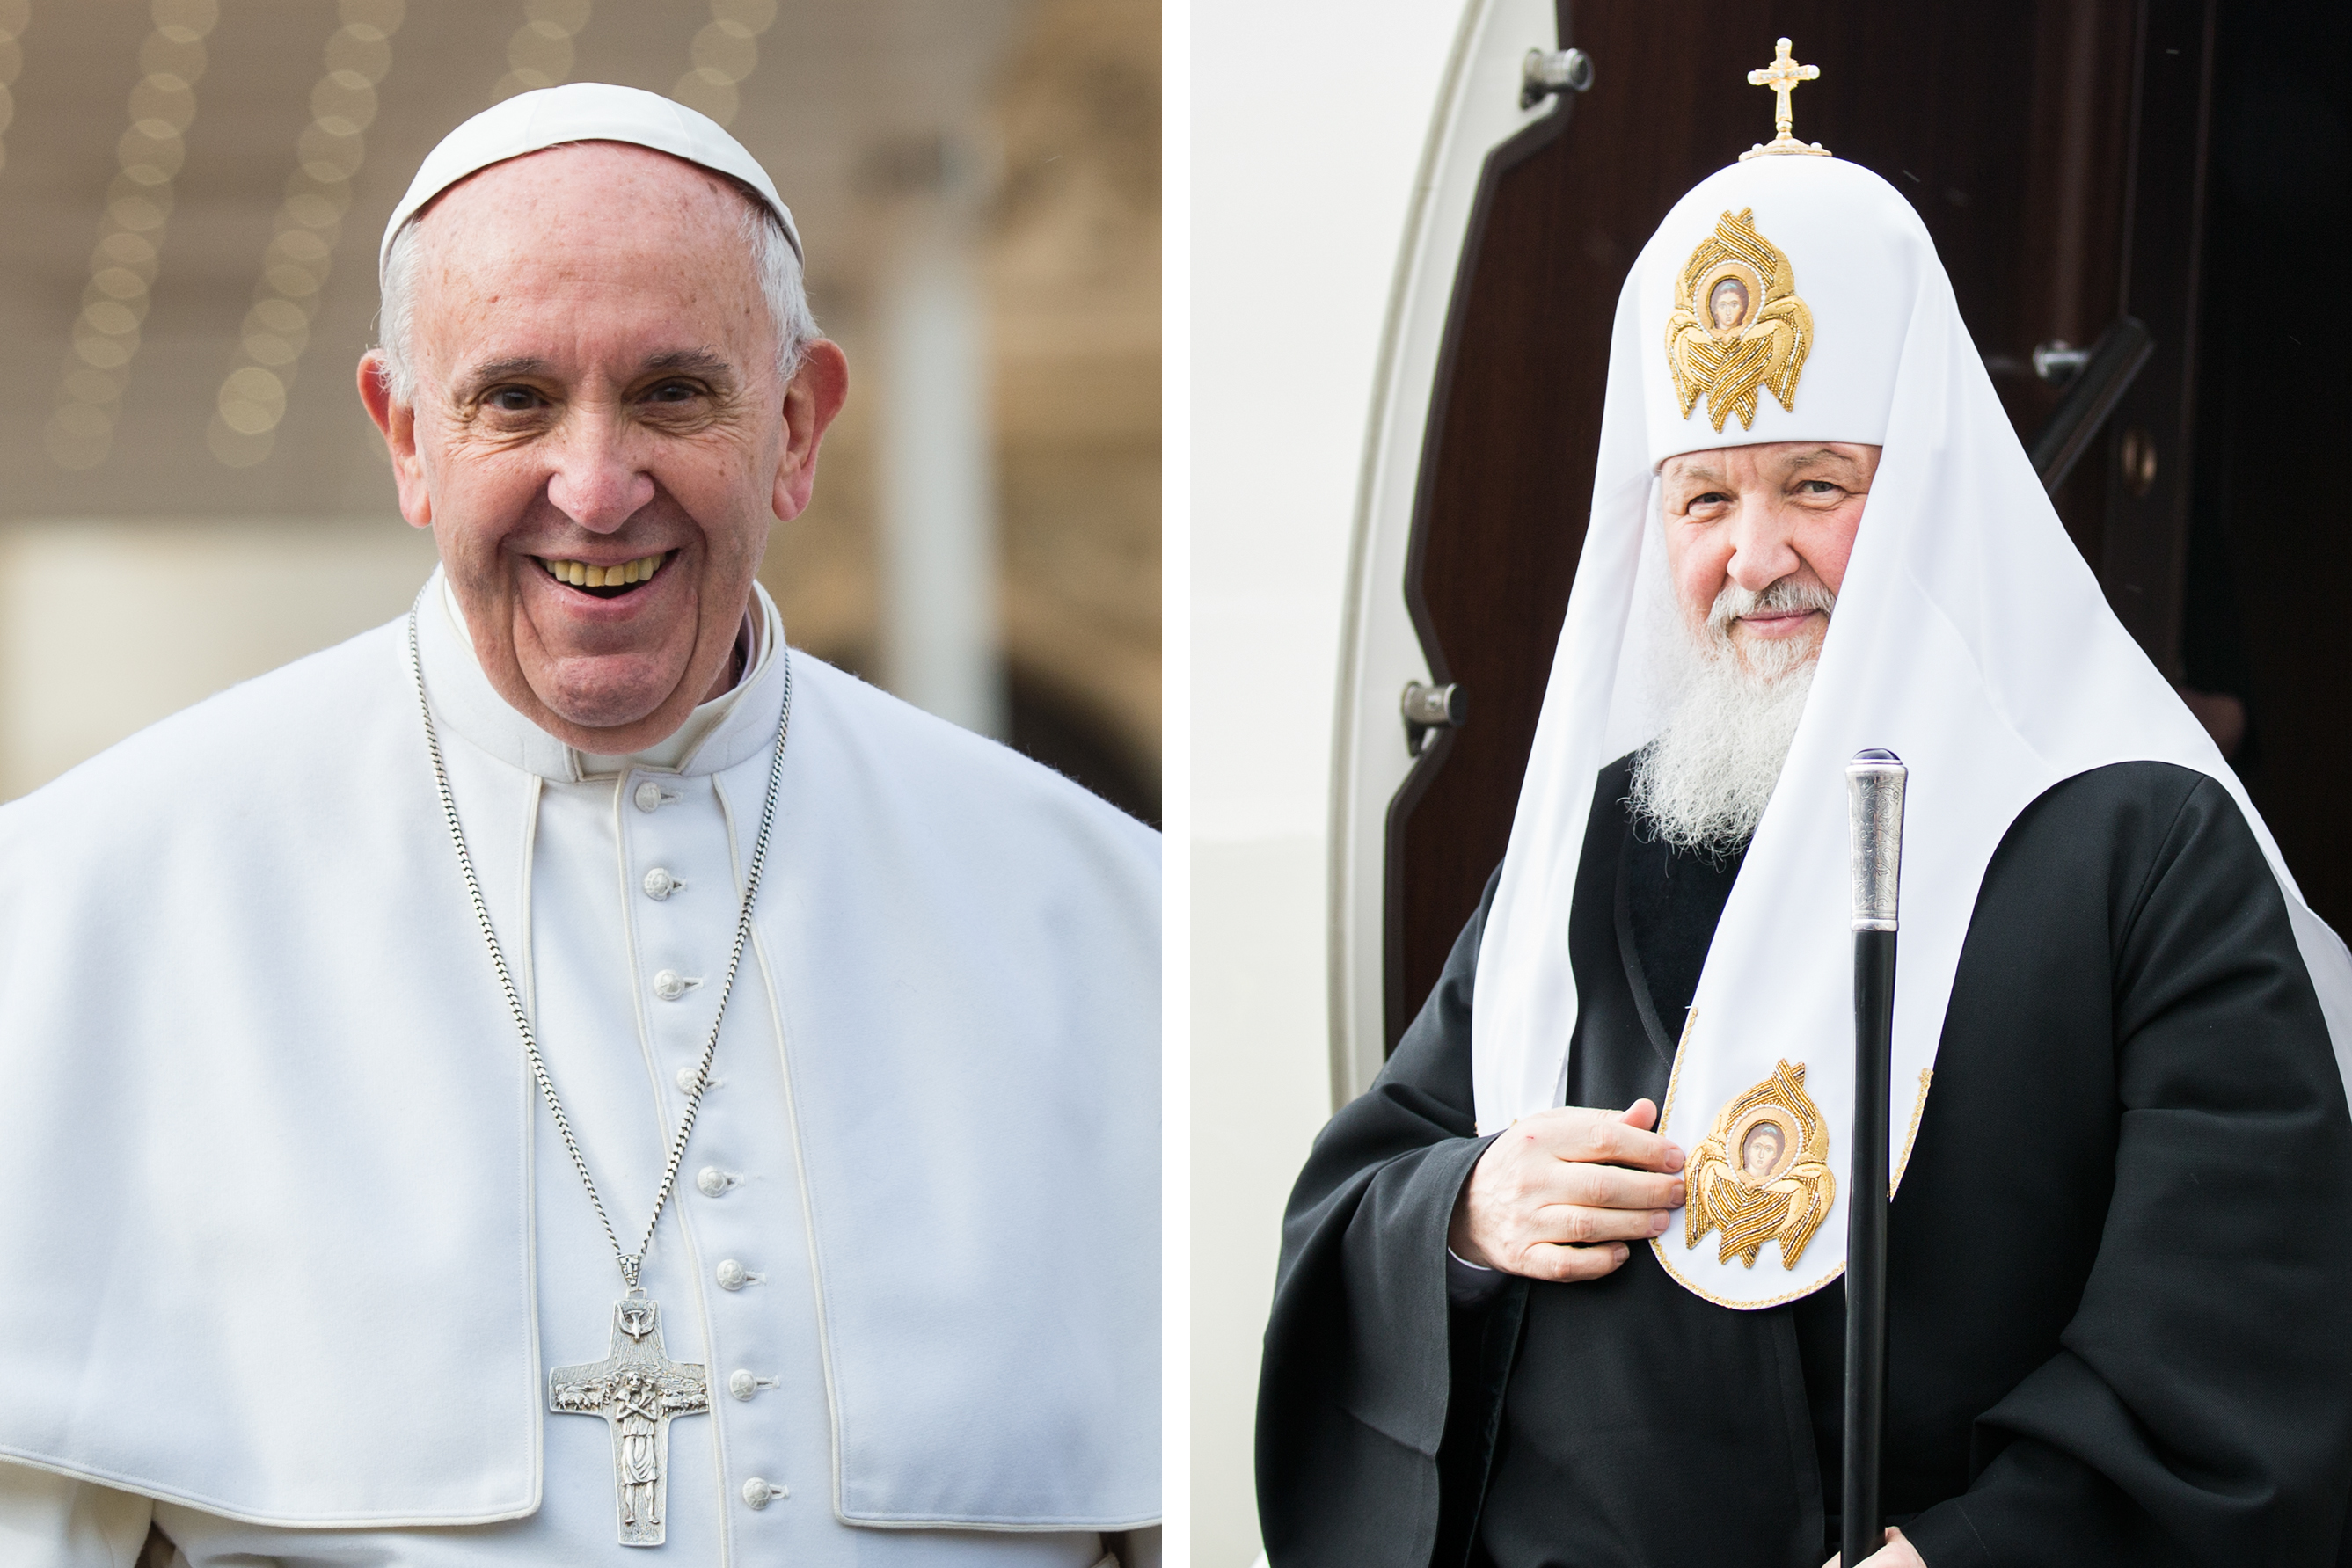 À gauche, le pape François, 79 ans né en Argentine, à la tête d'une Église de 1,2 milliard de catholiques. À droite, le patriarche Cyrille, 69 ans, né en Russie, à la tête d'une Église de 165 millions d'orthodoxes russes